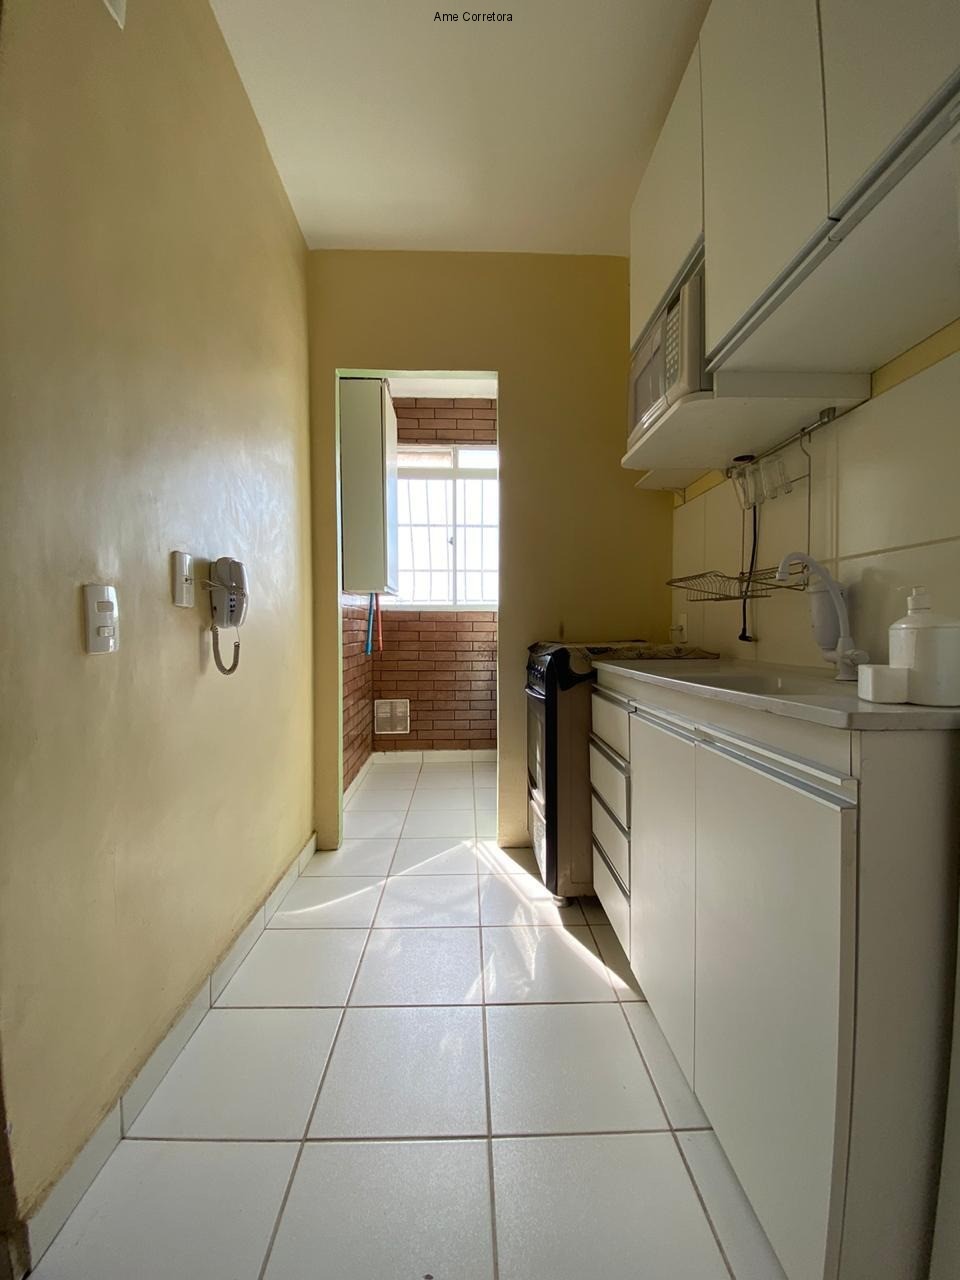 FOTO 05 - Apartamento 2 quartos à venda Rio de Janeiro,RJ - R$ 130.000 - AP00375 - 7